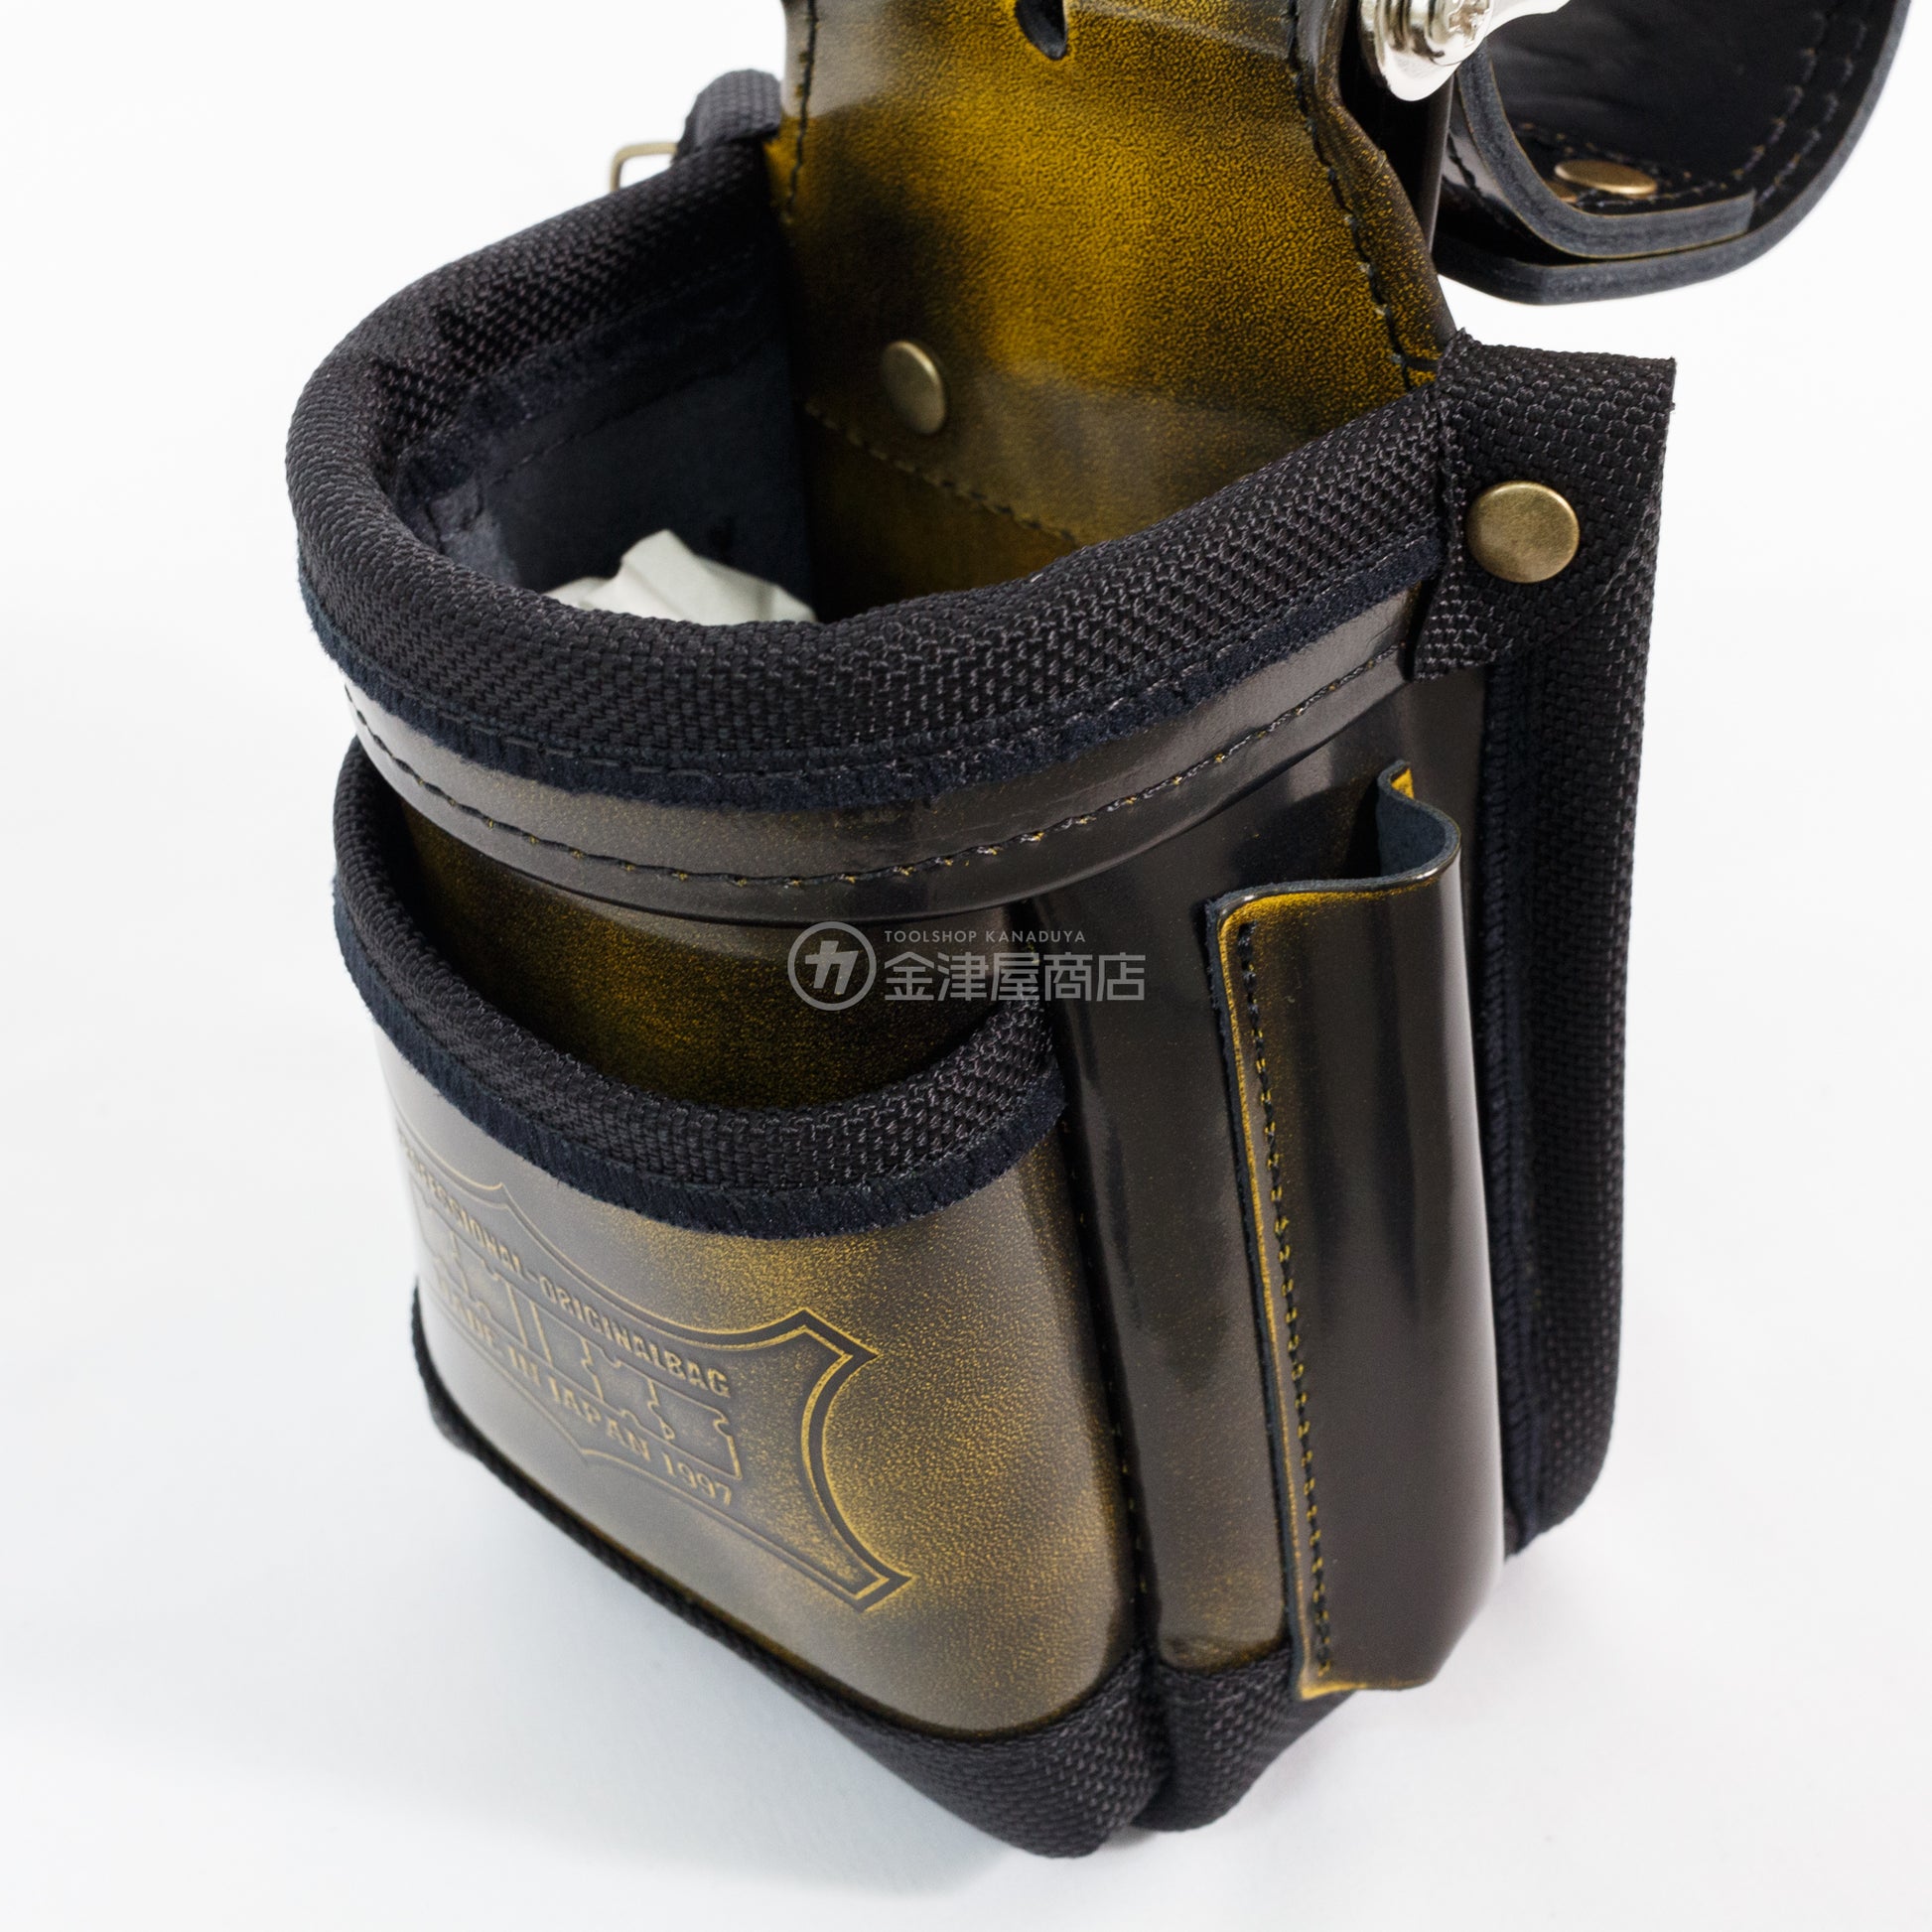 ニックス(KNICKS) アドバンガラス革 小物腰袋 ADV-201VADX-